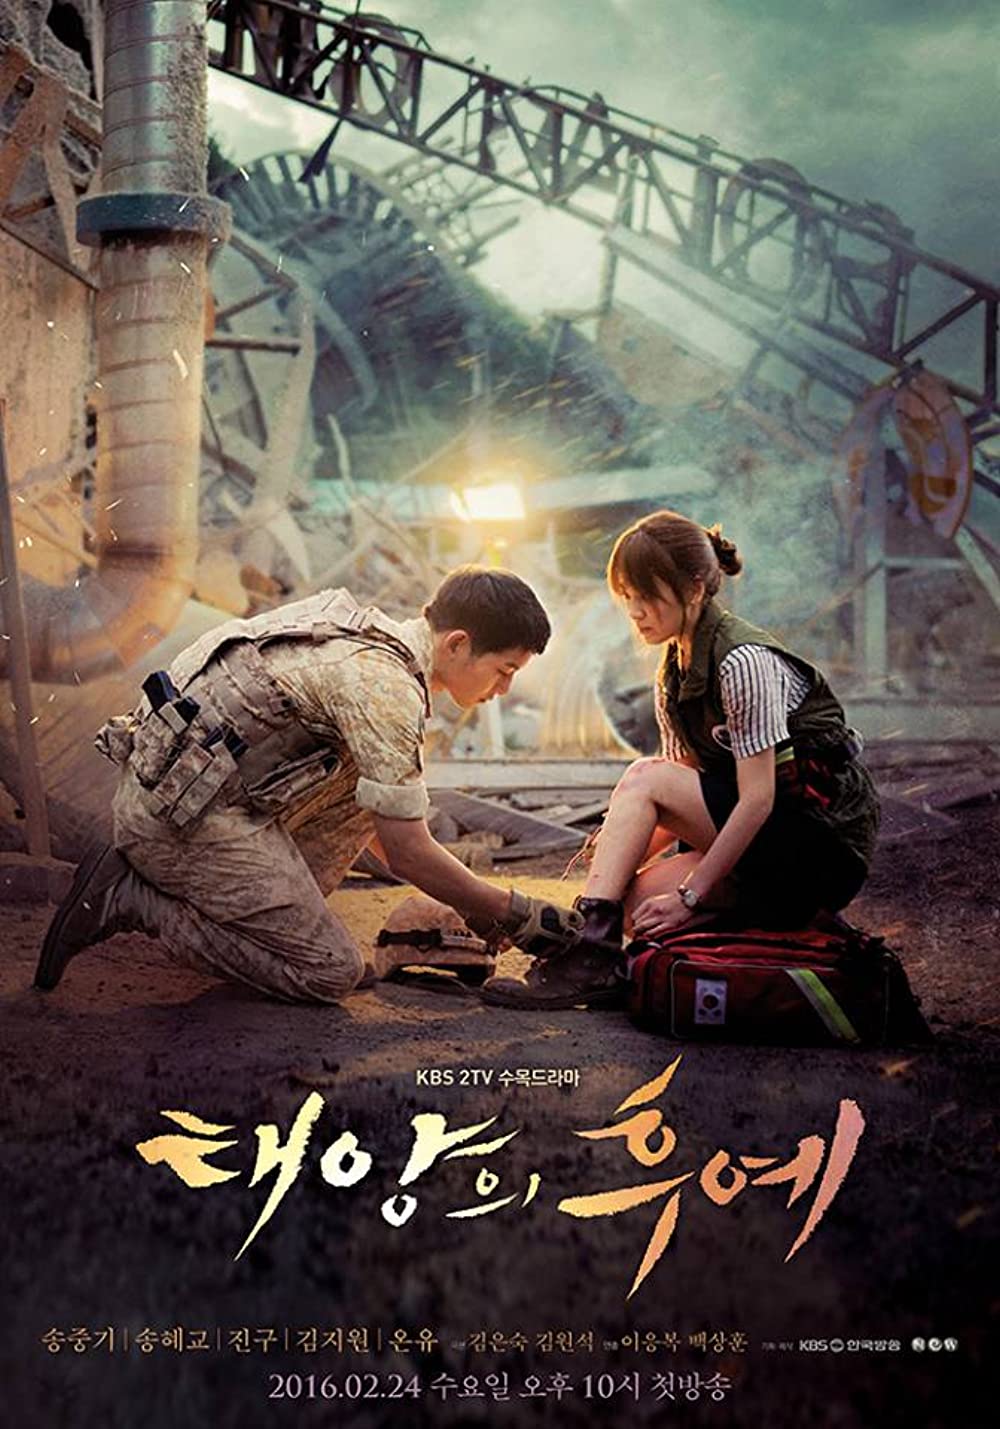 11 Film serial Netflix kisah kehidupan tentara, penuh suasana perang